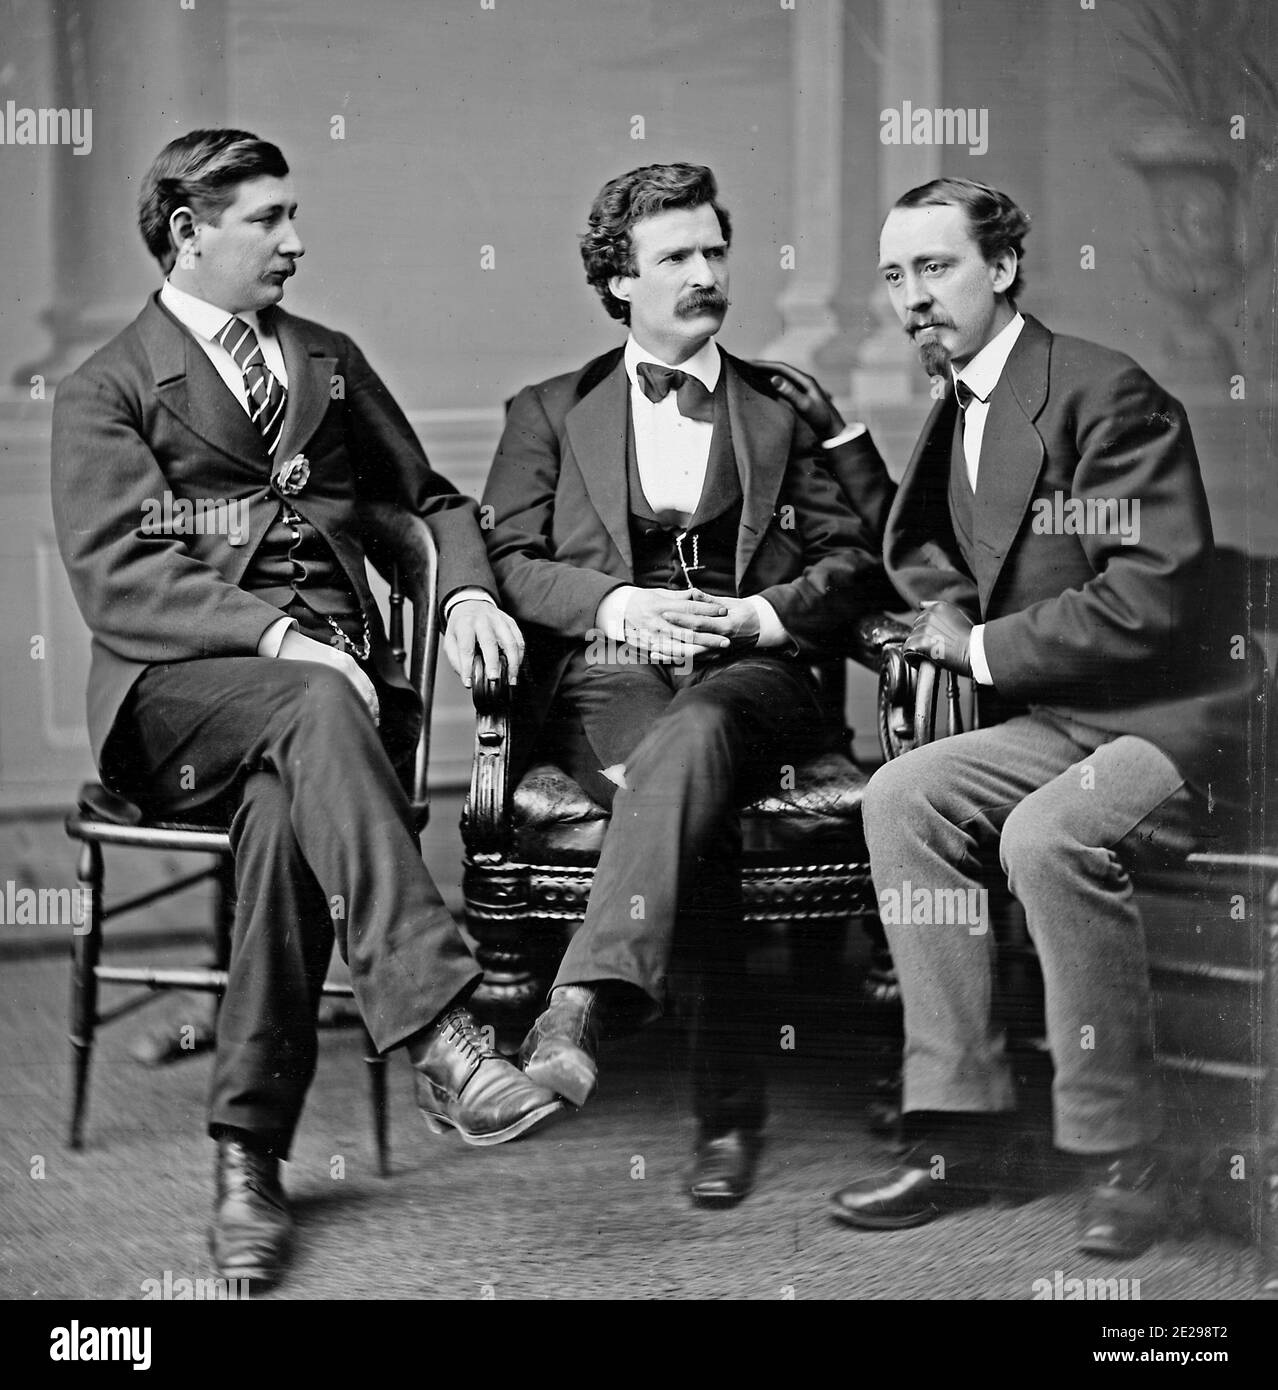 Photo de groupe portrait de l'auteur et humoriste Mark Twain (alias Samuel L. Clemens, au milieu), a noté le correspondant de la Guerre de Sécession et l'auteur George Alfred Townsend (à gauche), et David Gray, rédacteur en chef du Buffalo Courier (à droite), février 1871 Banque D'Images